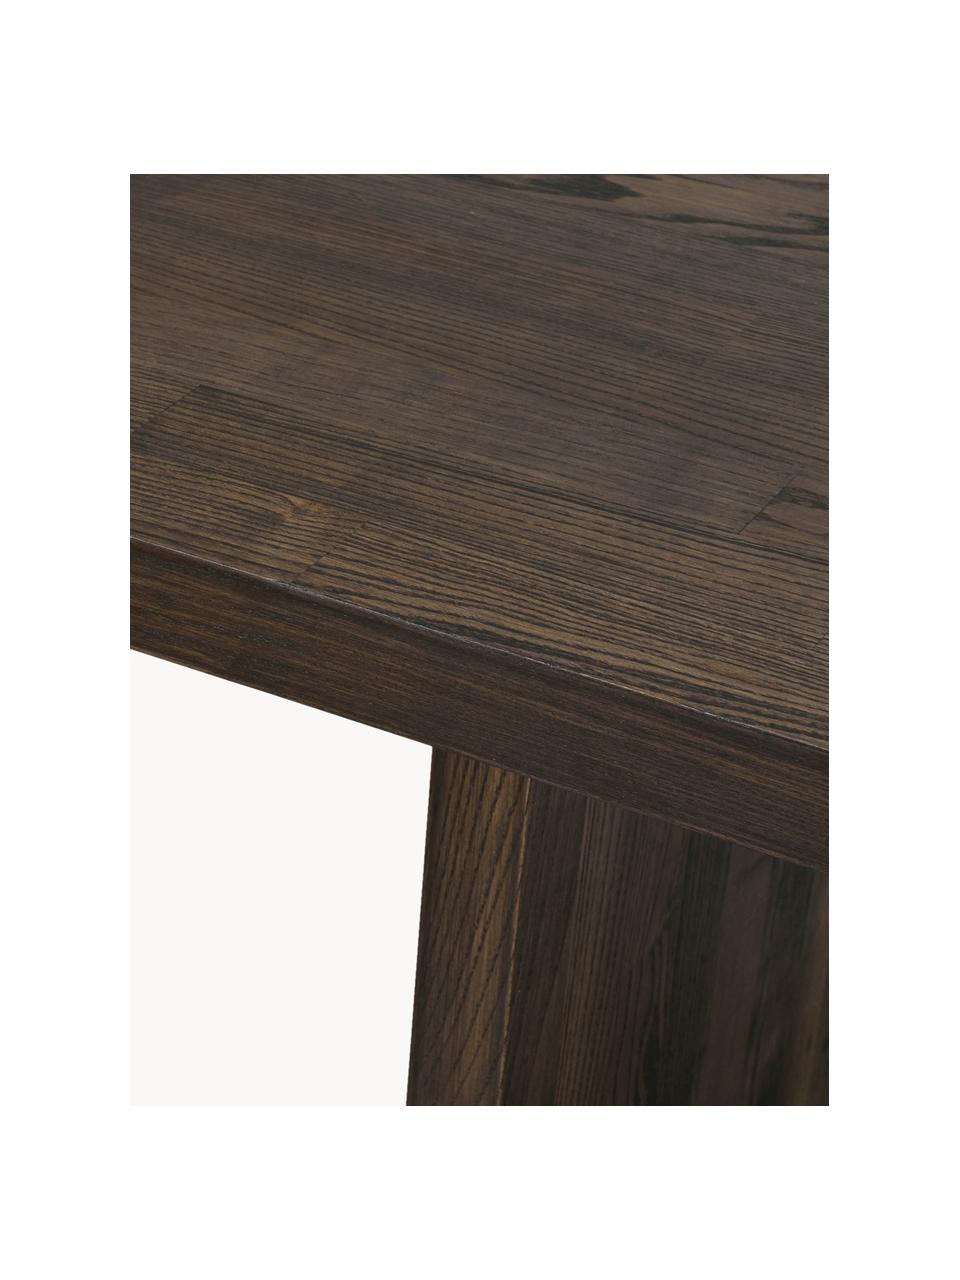 Jedálenský stôl z dubového dreva Emmett, 240 x 95 cm, Masívne dubové drevo, ošetrené olejom
Tento produkt je vyrobený z trvalo udržateľného dreva s certifikátom FSC®., Dubové drevo, tmavý olej, Š 240 x H 95 cm